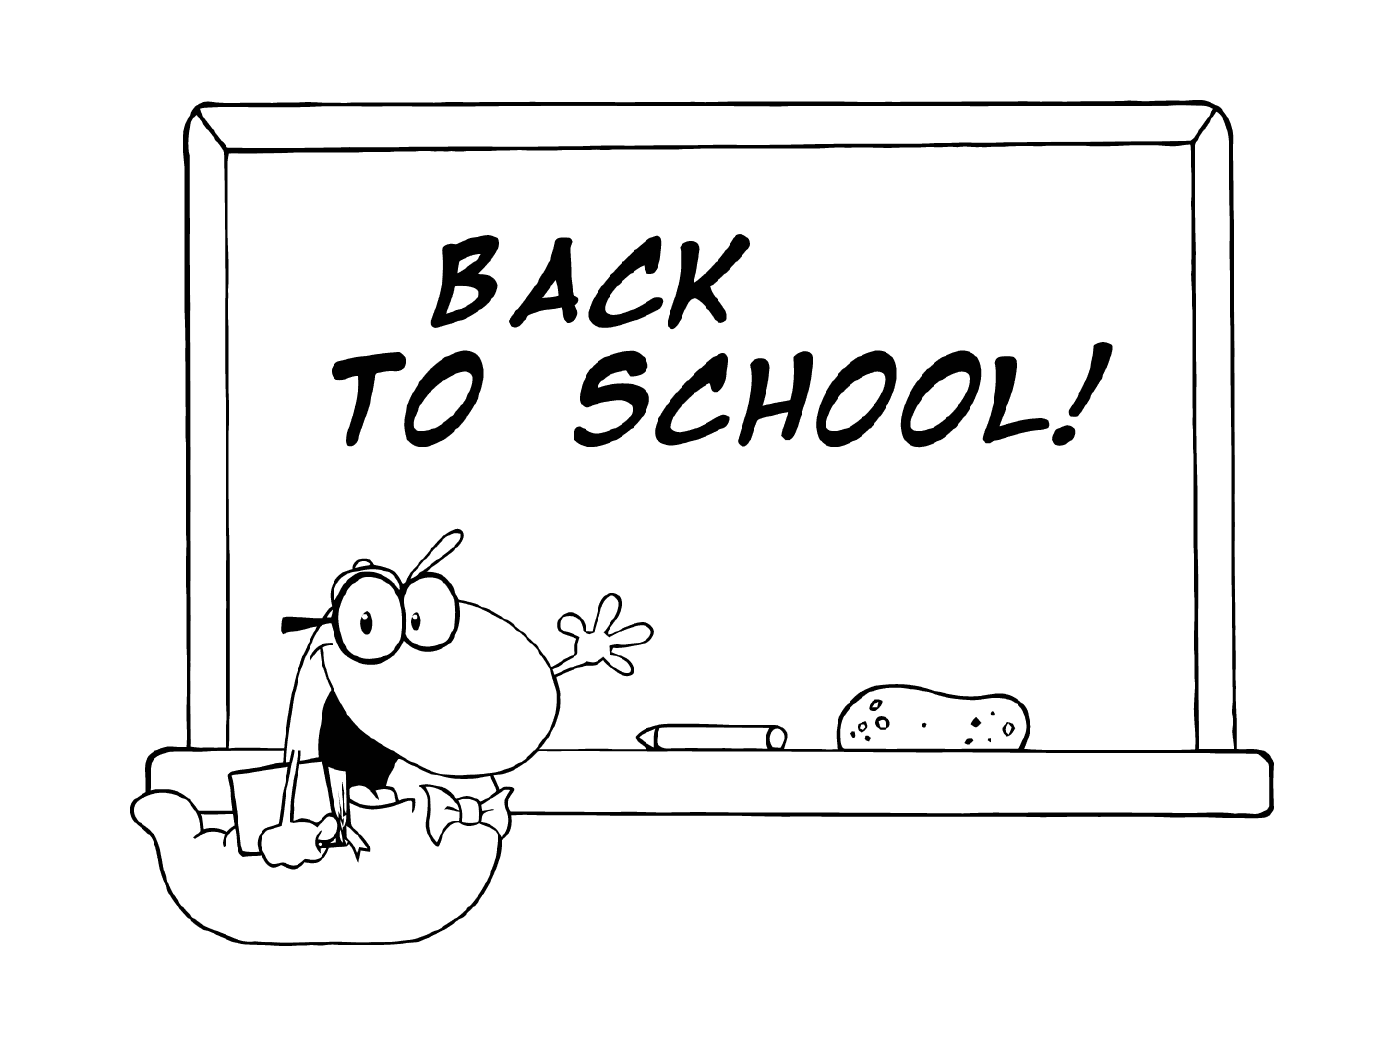  Возвращайся в школу, учительница рисует 